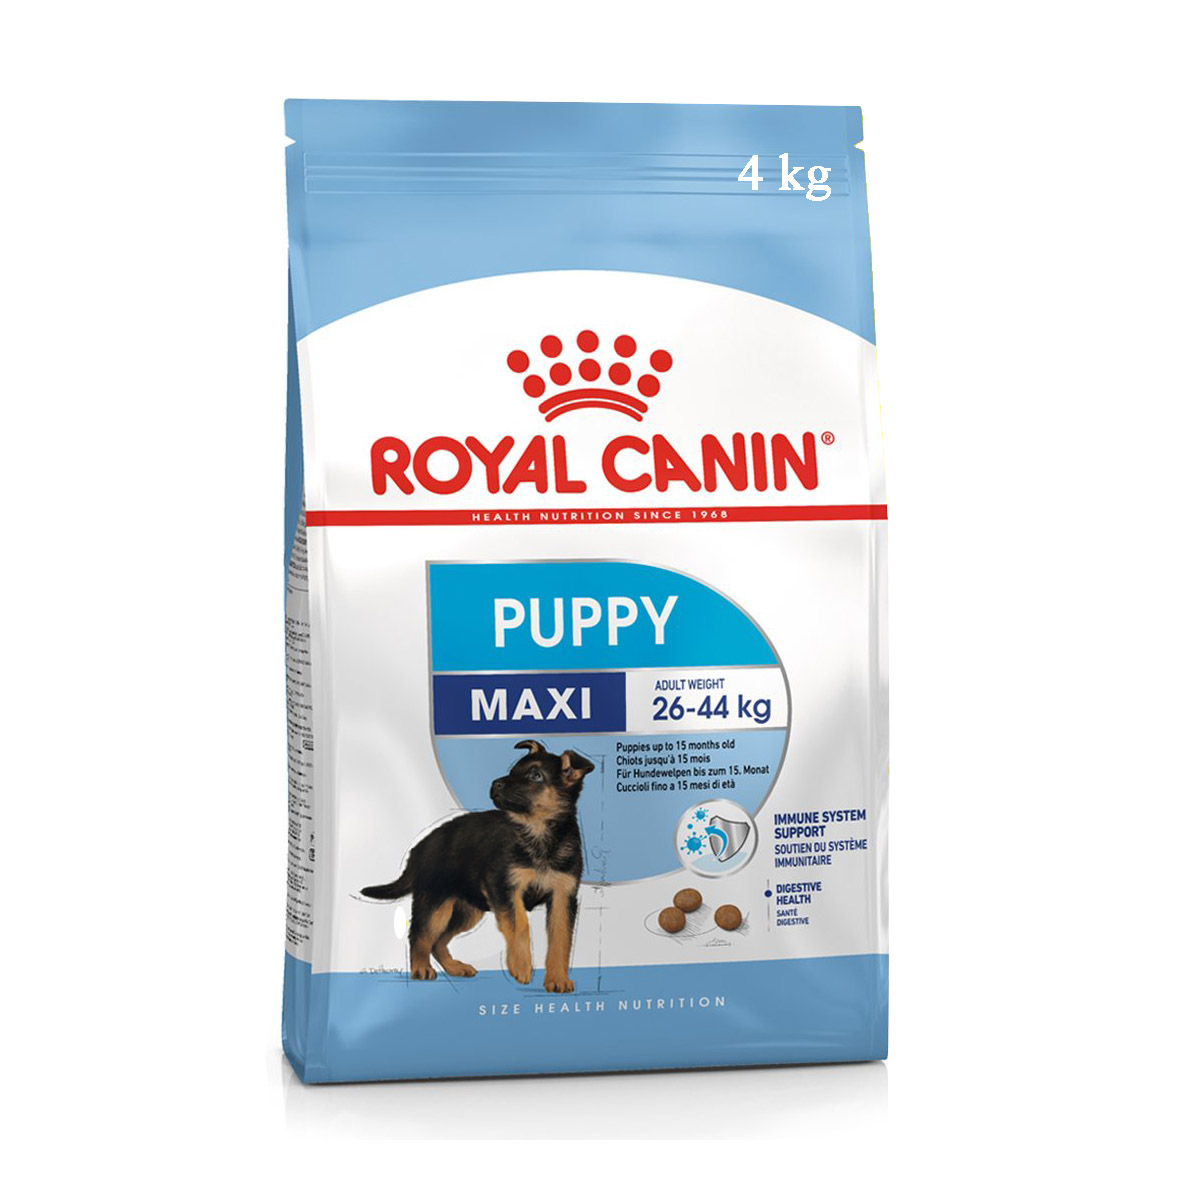 Royal canin maxi puppy - Thức ăn cho chó con cỡ lớn 4kg